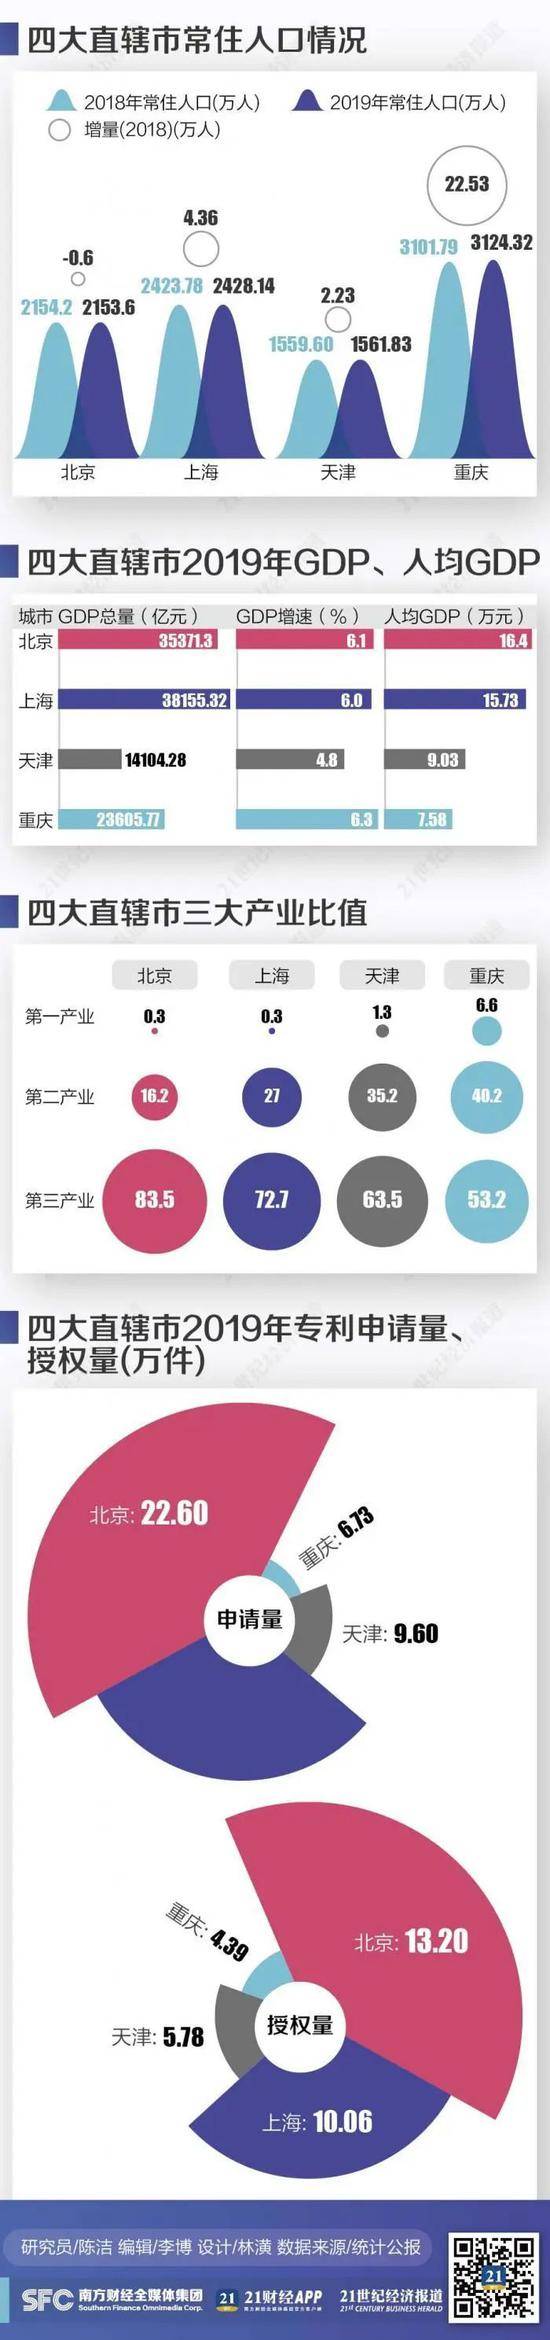 去年四大直辖市人口竞争力图谱：重庆常住人口增加22万，北京科教人才优势突出